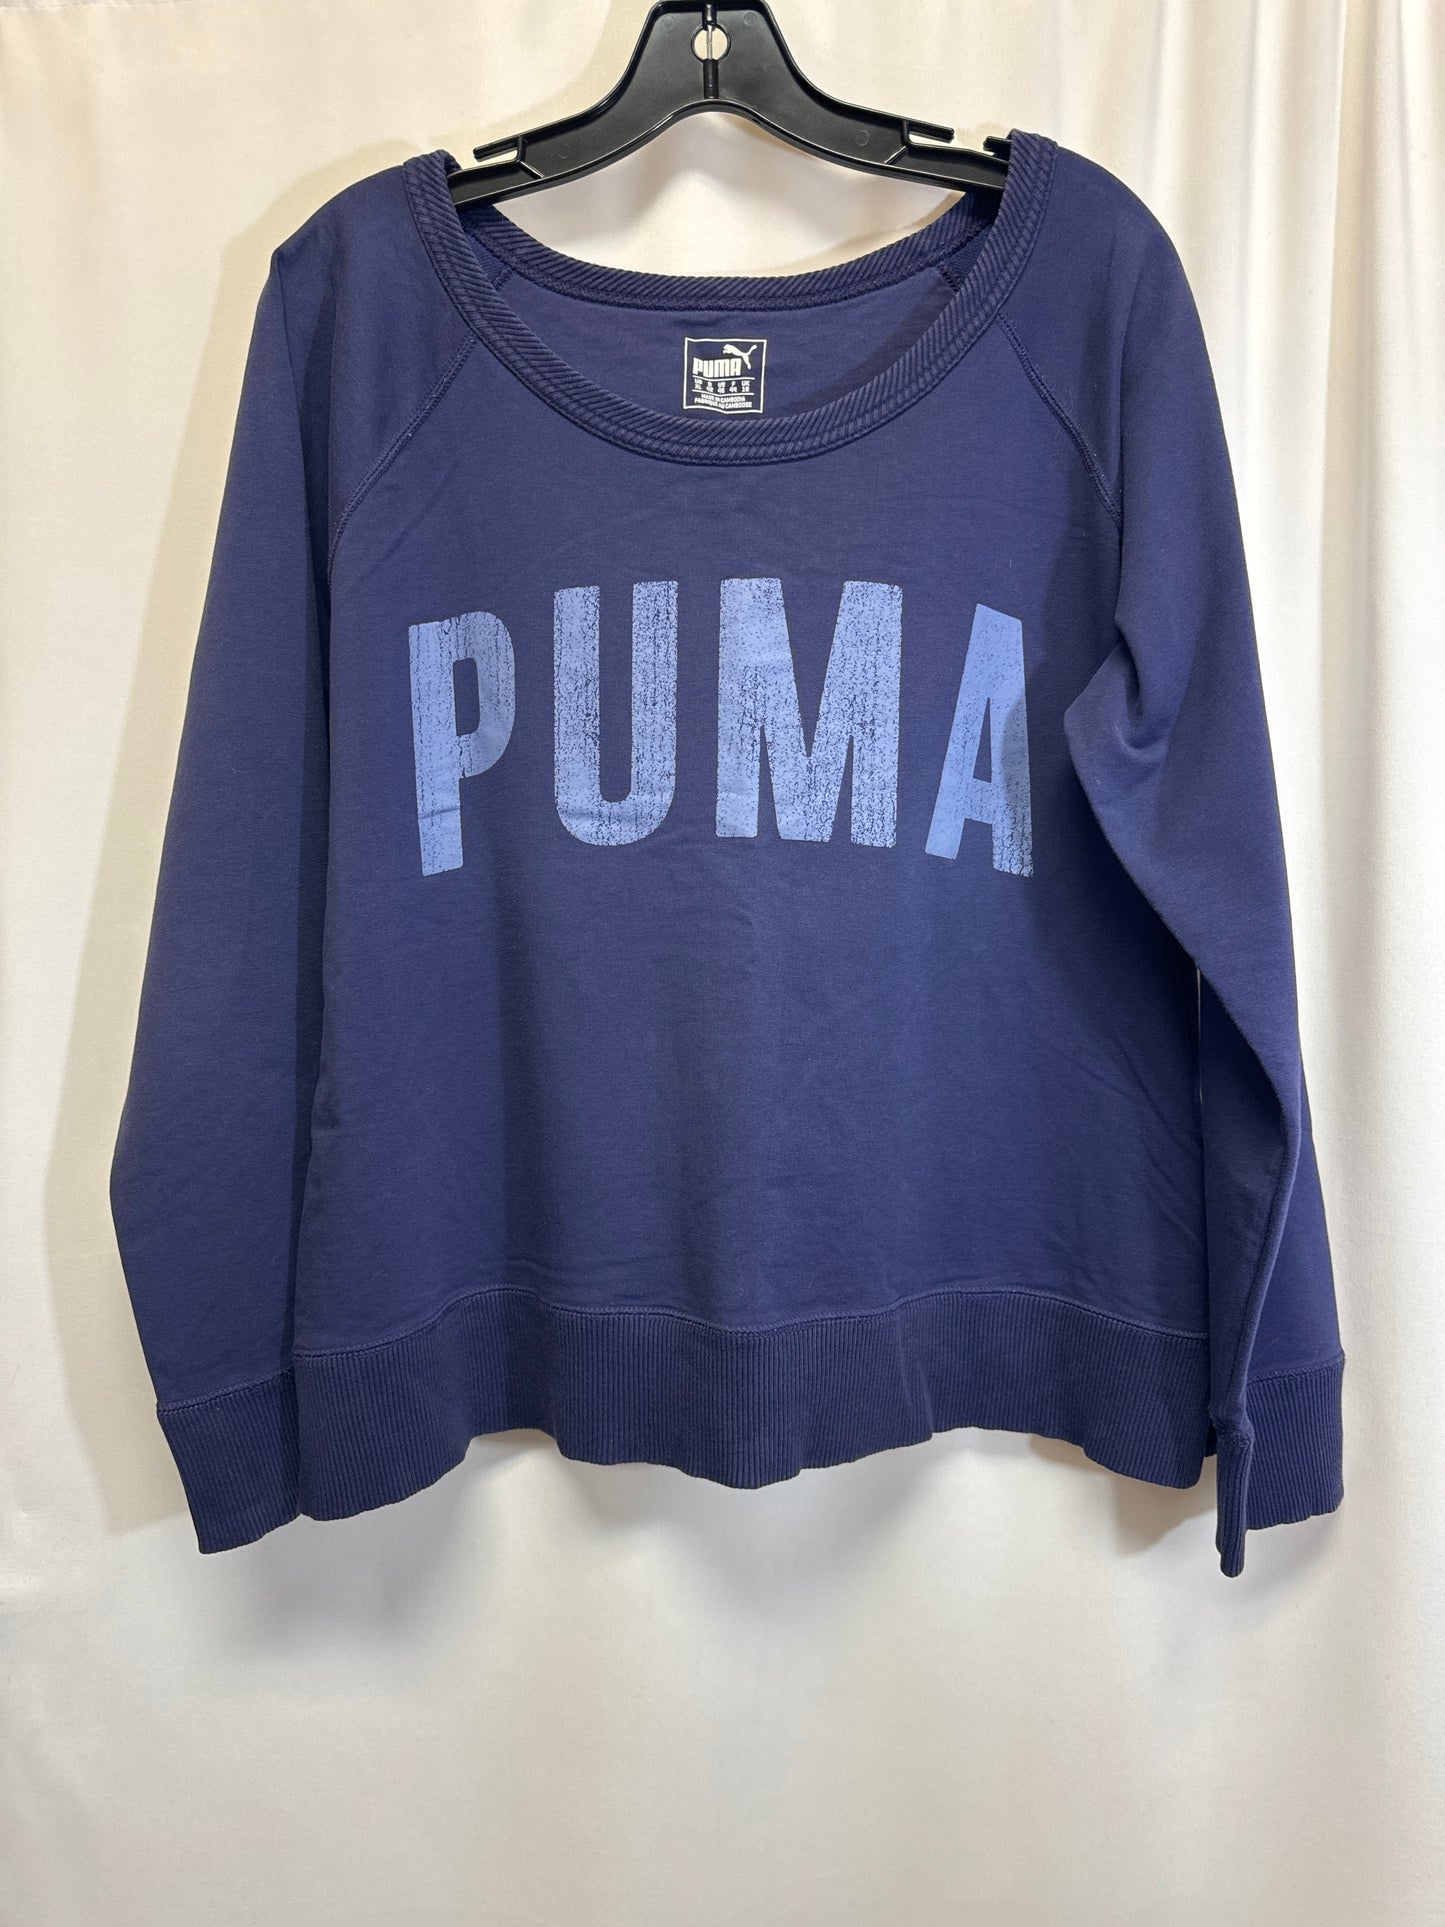 Blue Sweatshirt Collar Puma, Size Xl